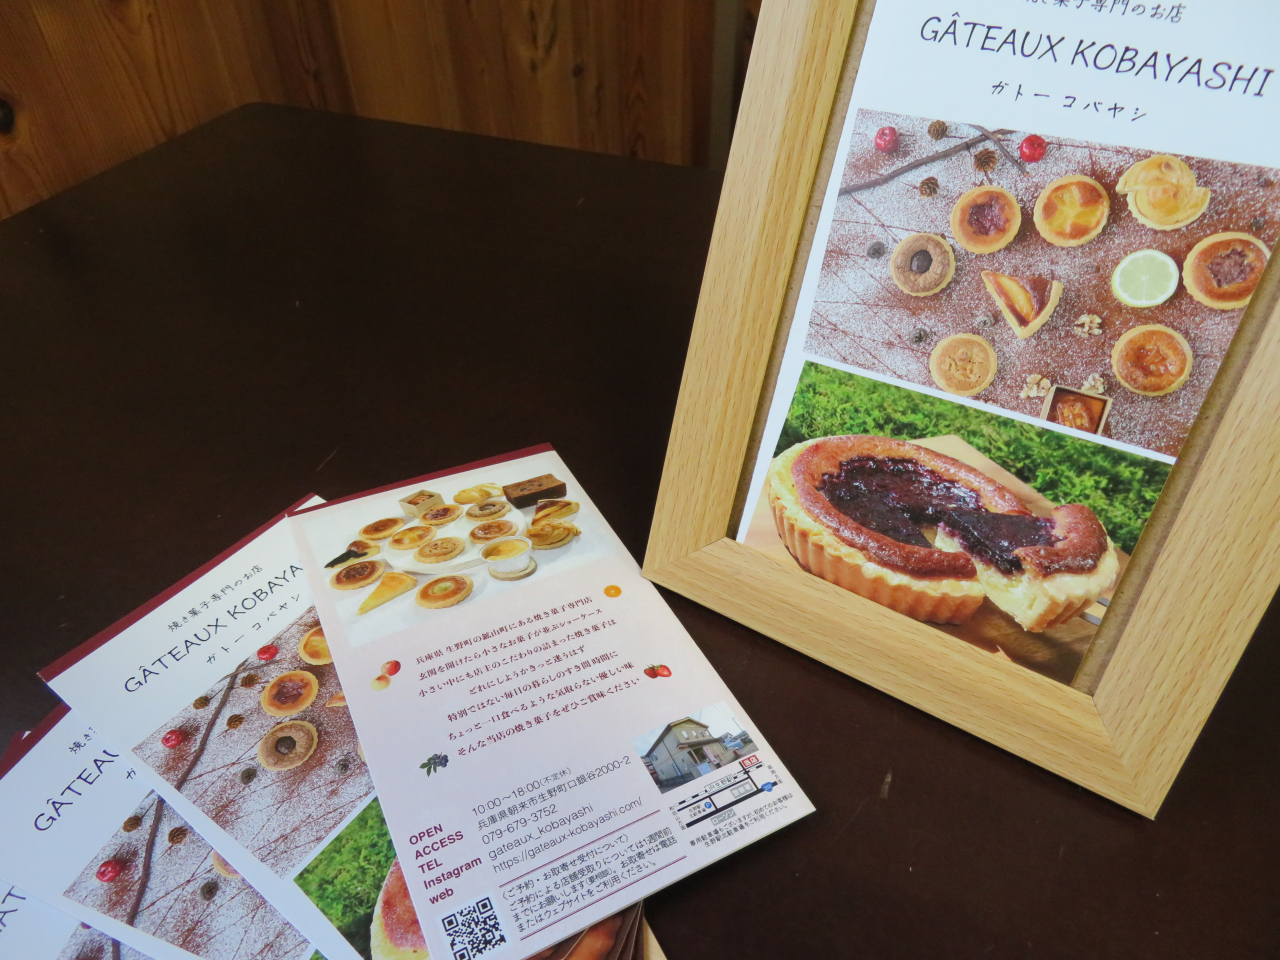 明日水曜日のレディースデーは、朝来市生野町の「ガトーコバヤシ」さんの焼き菓子が登場です。

何のお菓子になるでしょうか？？